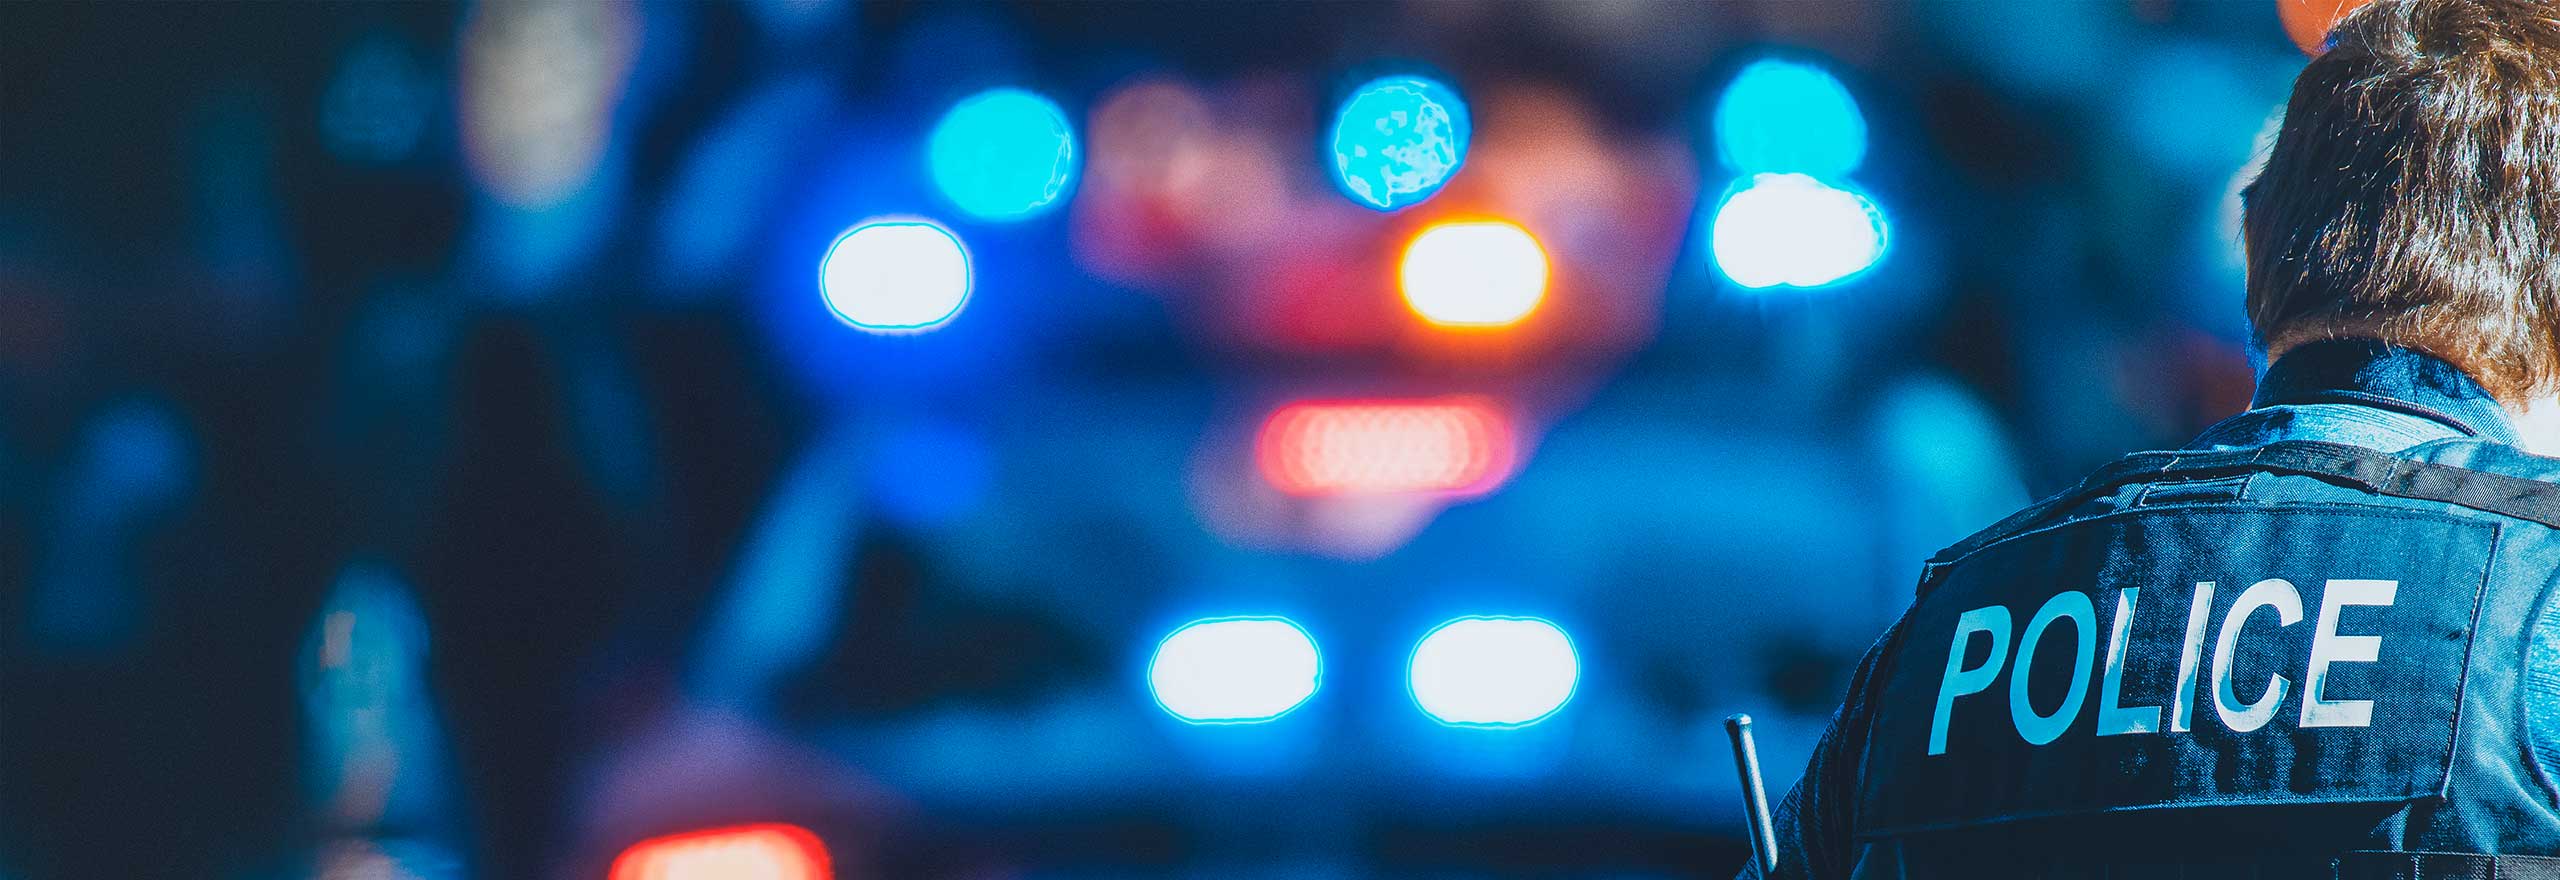 夜間に青く光る警察車両の照明